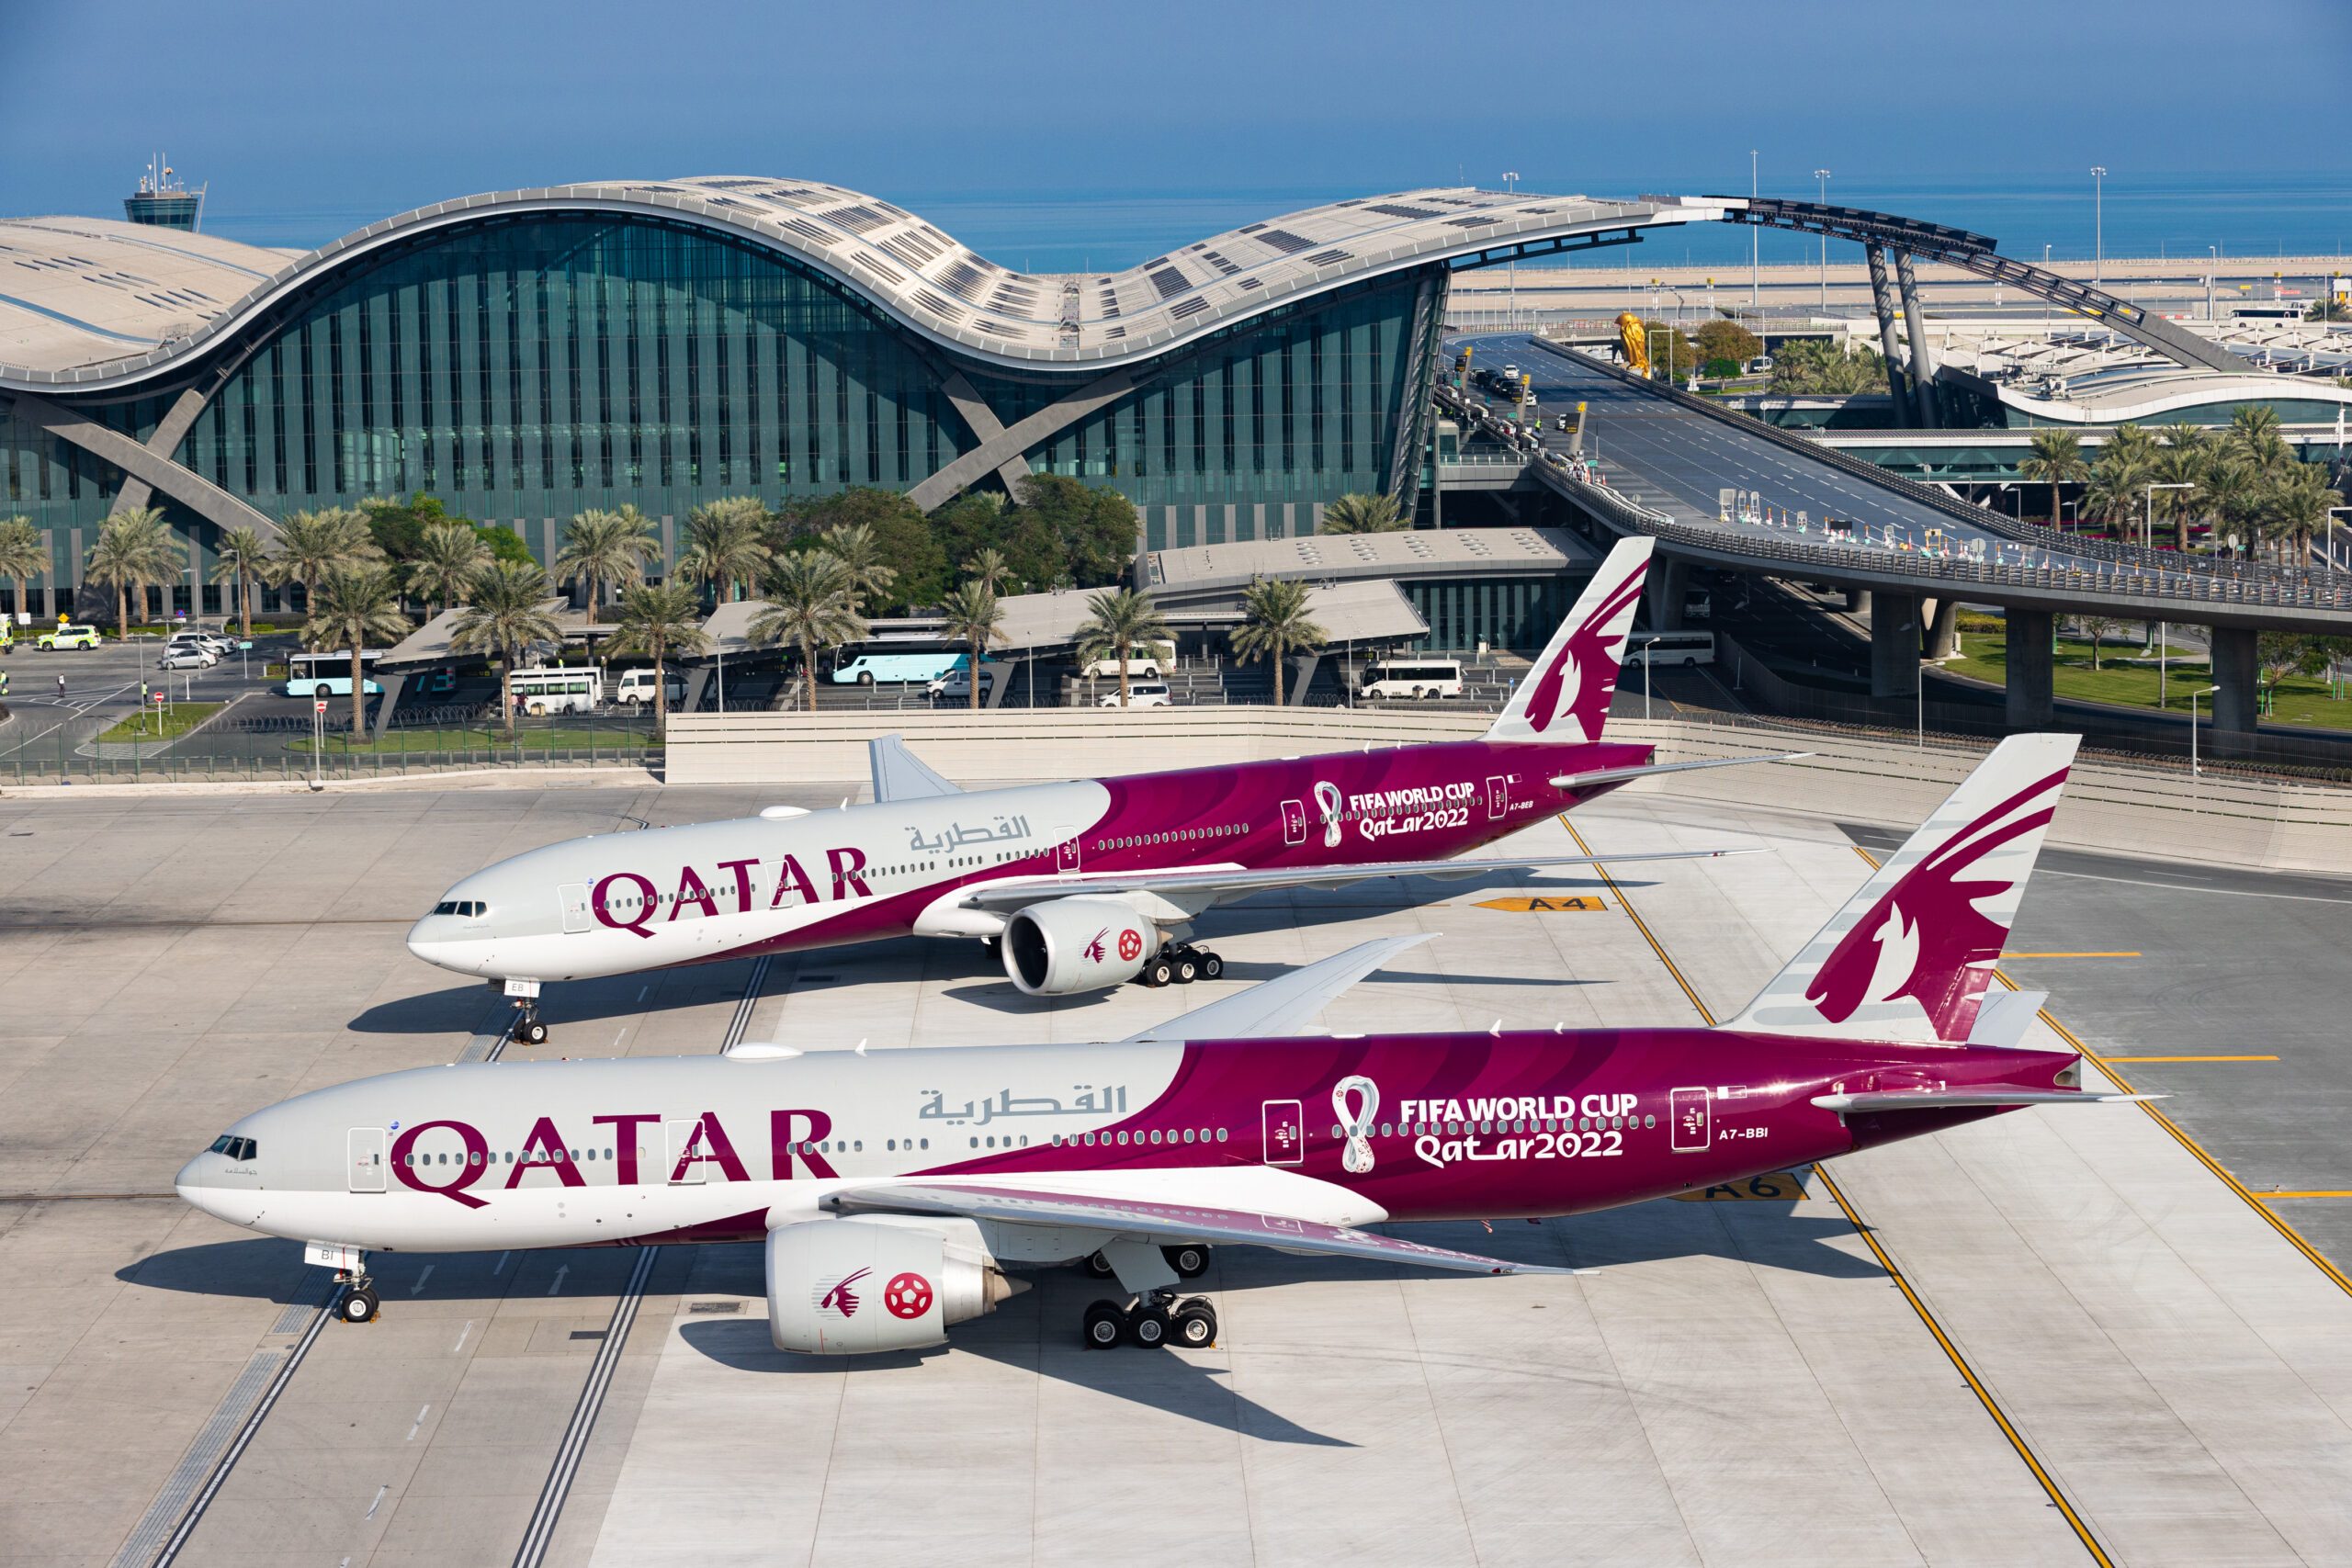 Qatar Airways planes